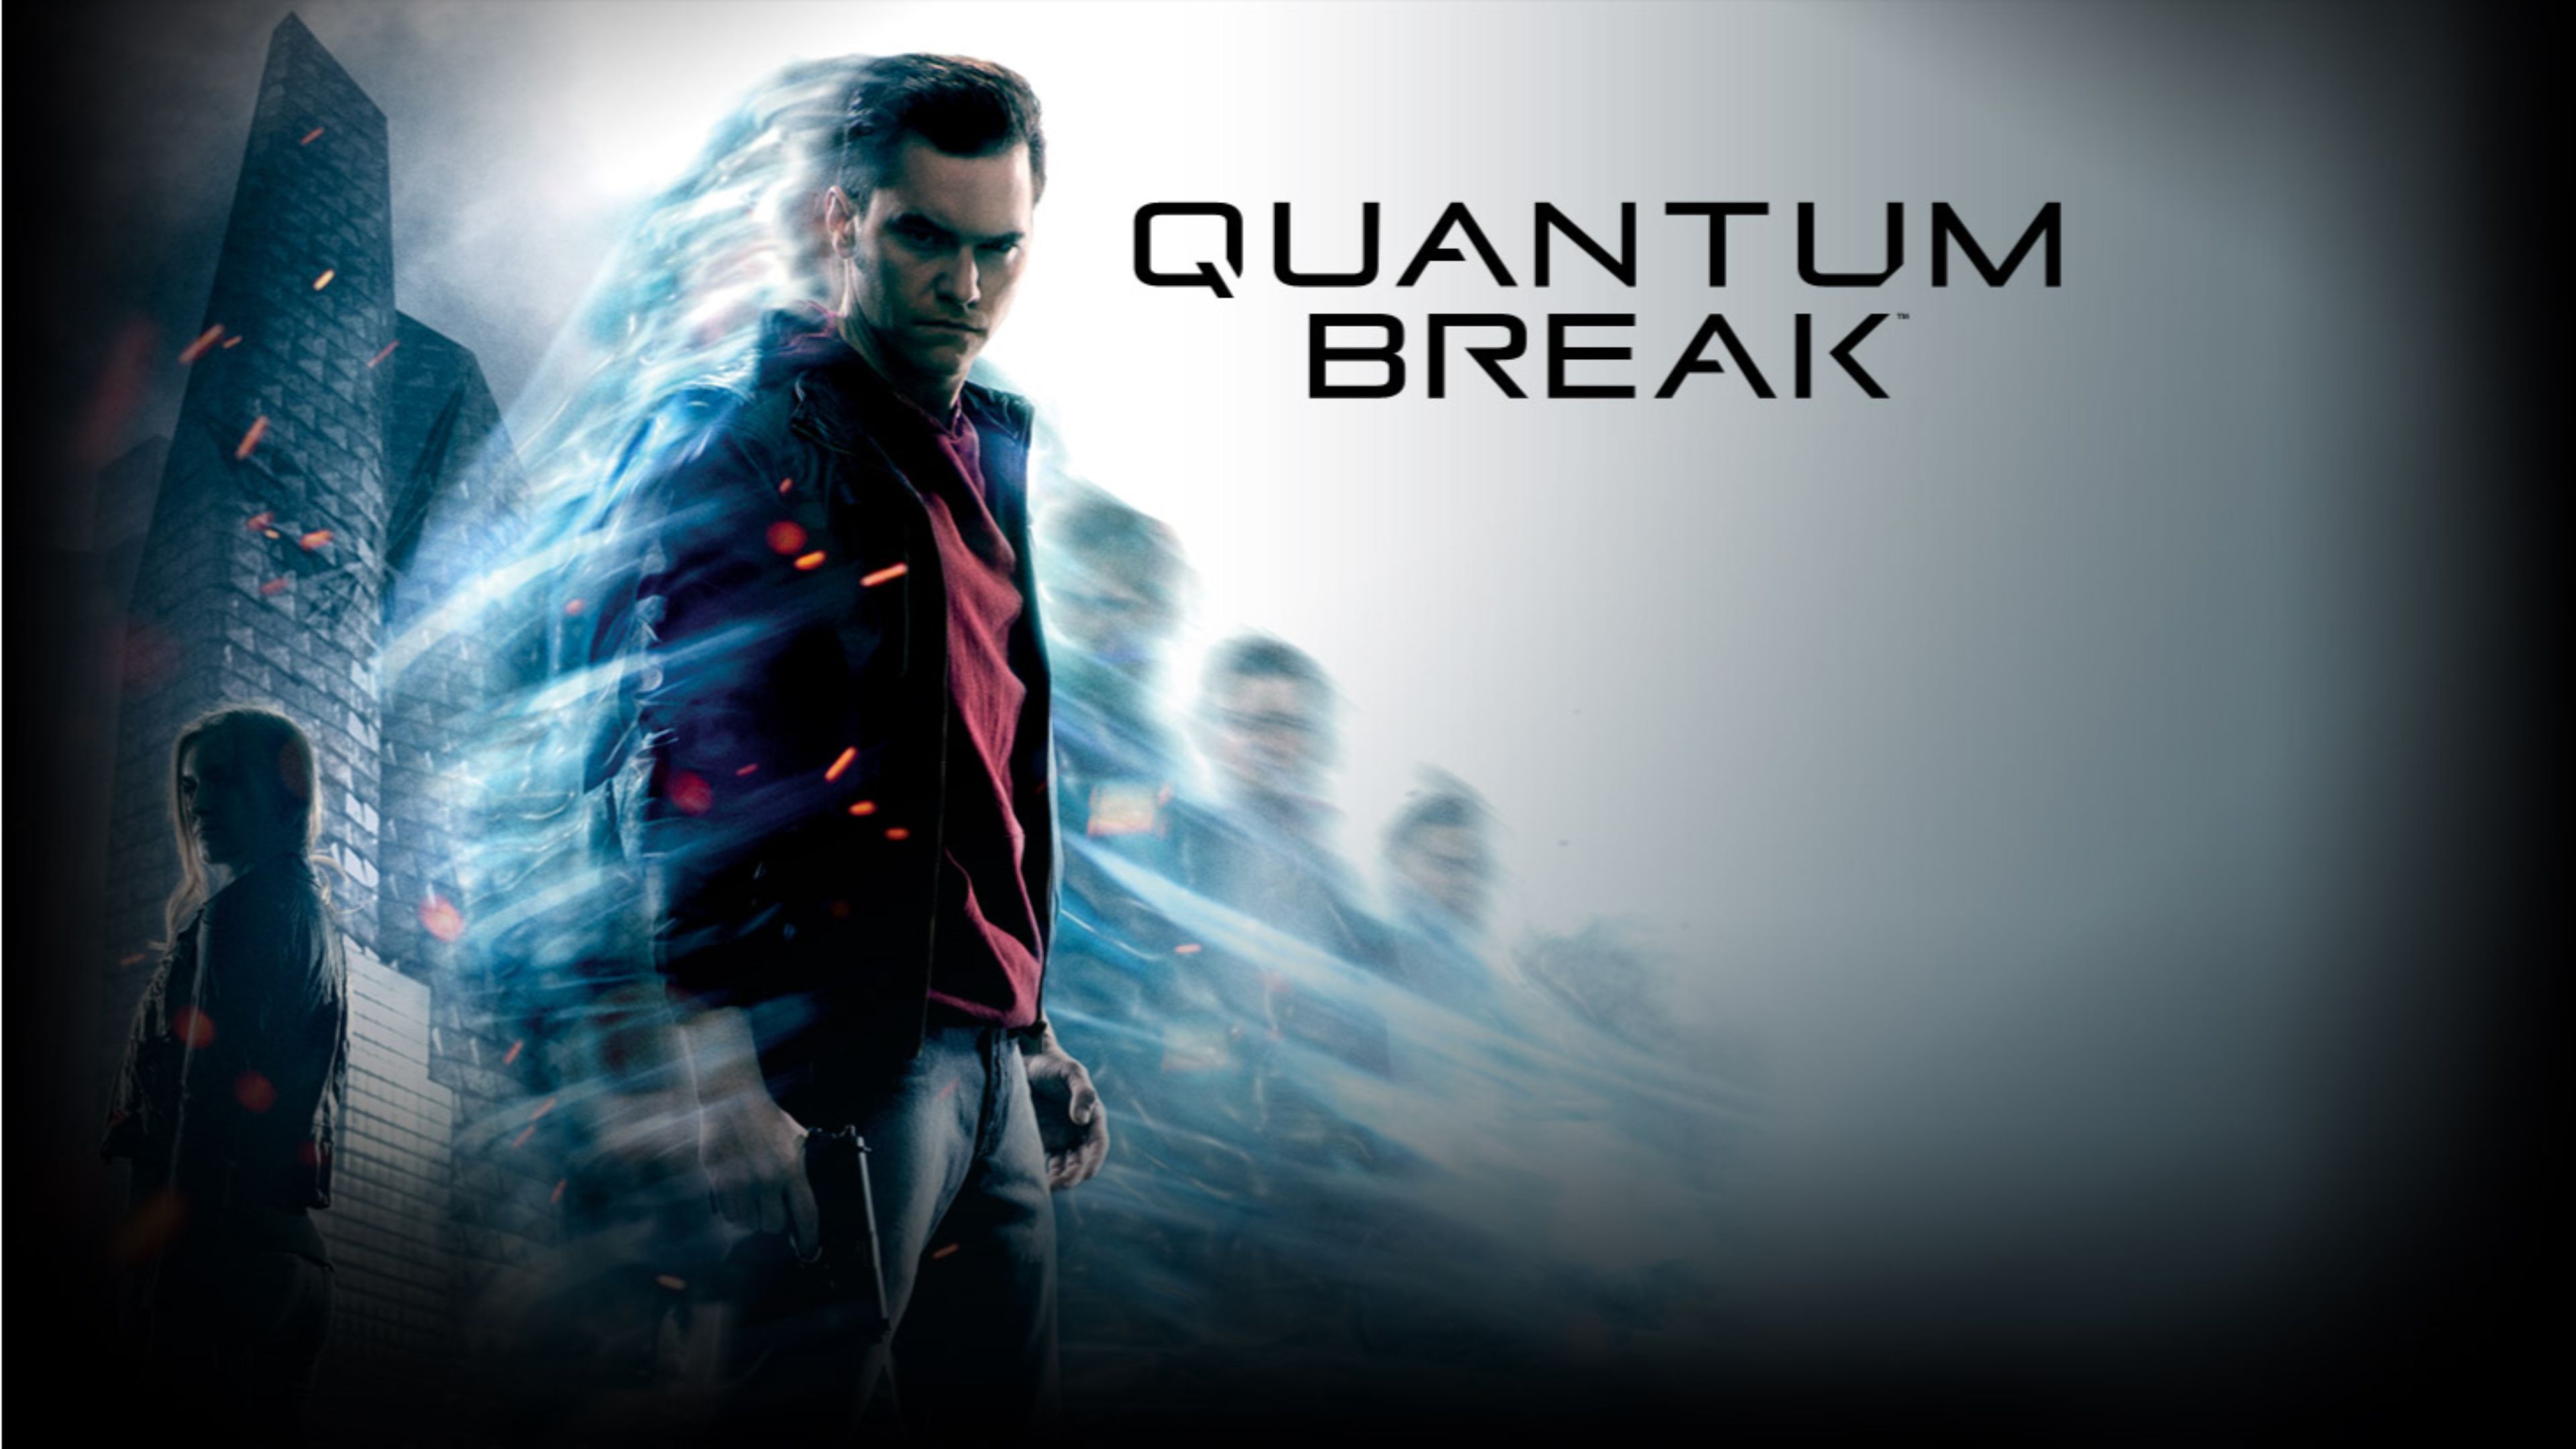 High Hd Quality Px Desktop Quantum Break Images Quantum Break